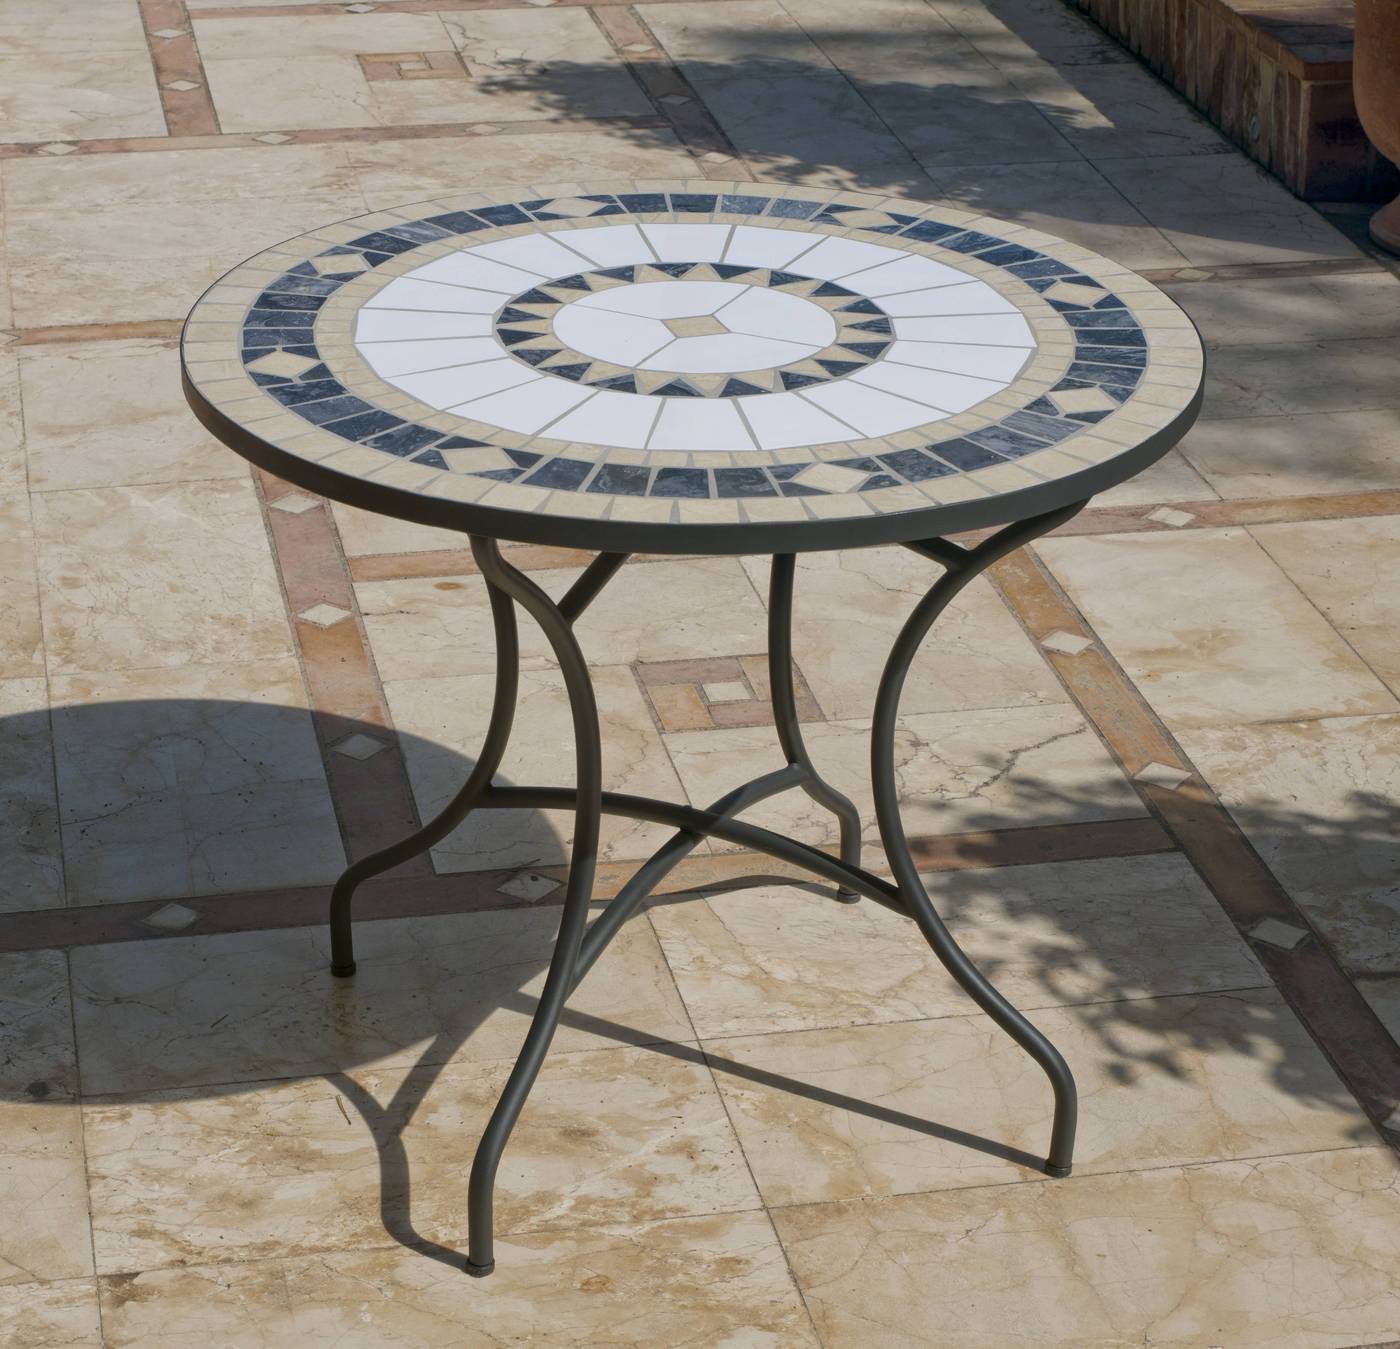 Set Mosaico Loira 75-4 - Conjunto para jardín color gris antracita: 1 mesa redonda 75 cm. de forja con panel mosaico + 4 sillones de acero y textilen